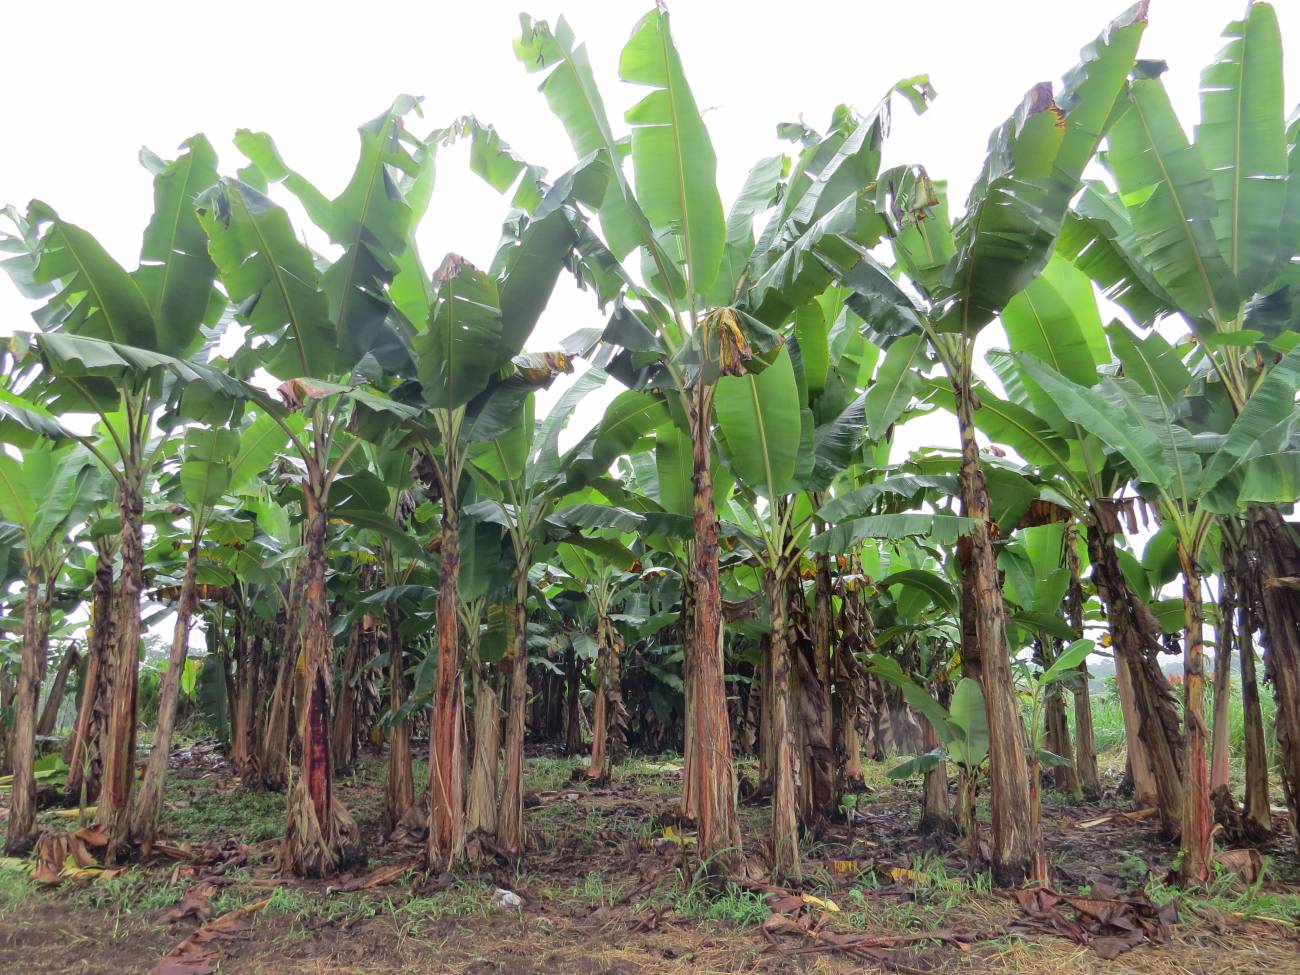 Plantación de banano en Ecuador. Fuente: Ana Belén Guerrero. Grupo de Agroenergética